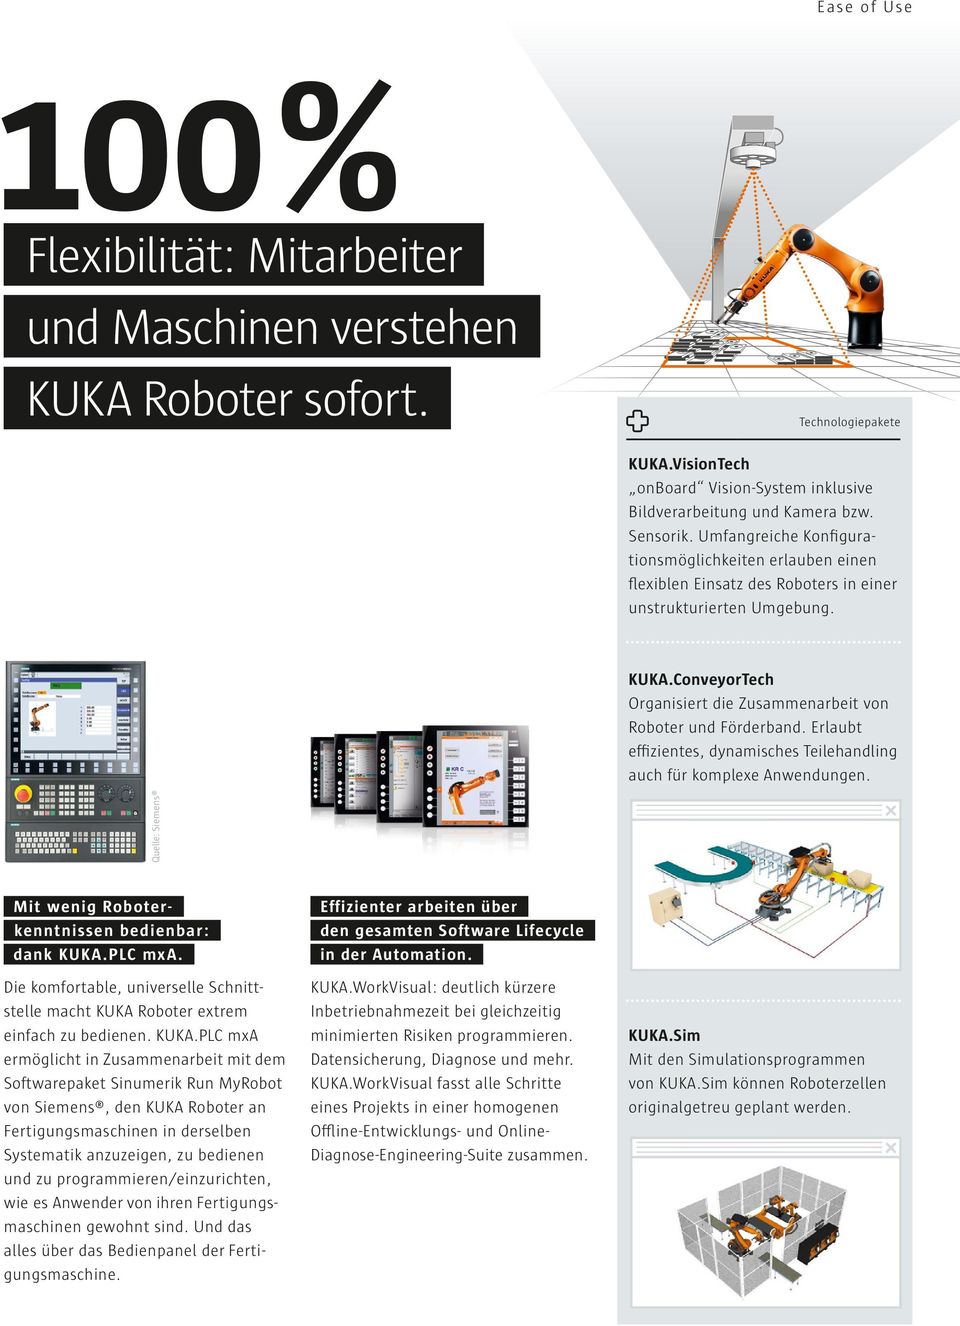 Erlaubt effizientes, dynamisches Teilehandling auch für komplexe Anwendungen. Quelle: Siemens Mit wenig Roboterkenntnissen bedienbar: dank KUKA.PLC mxa.